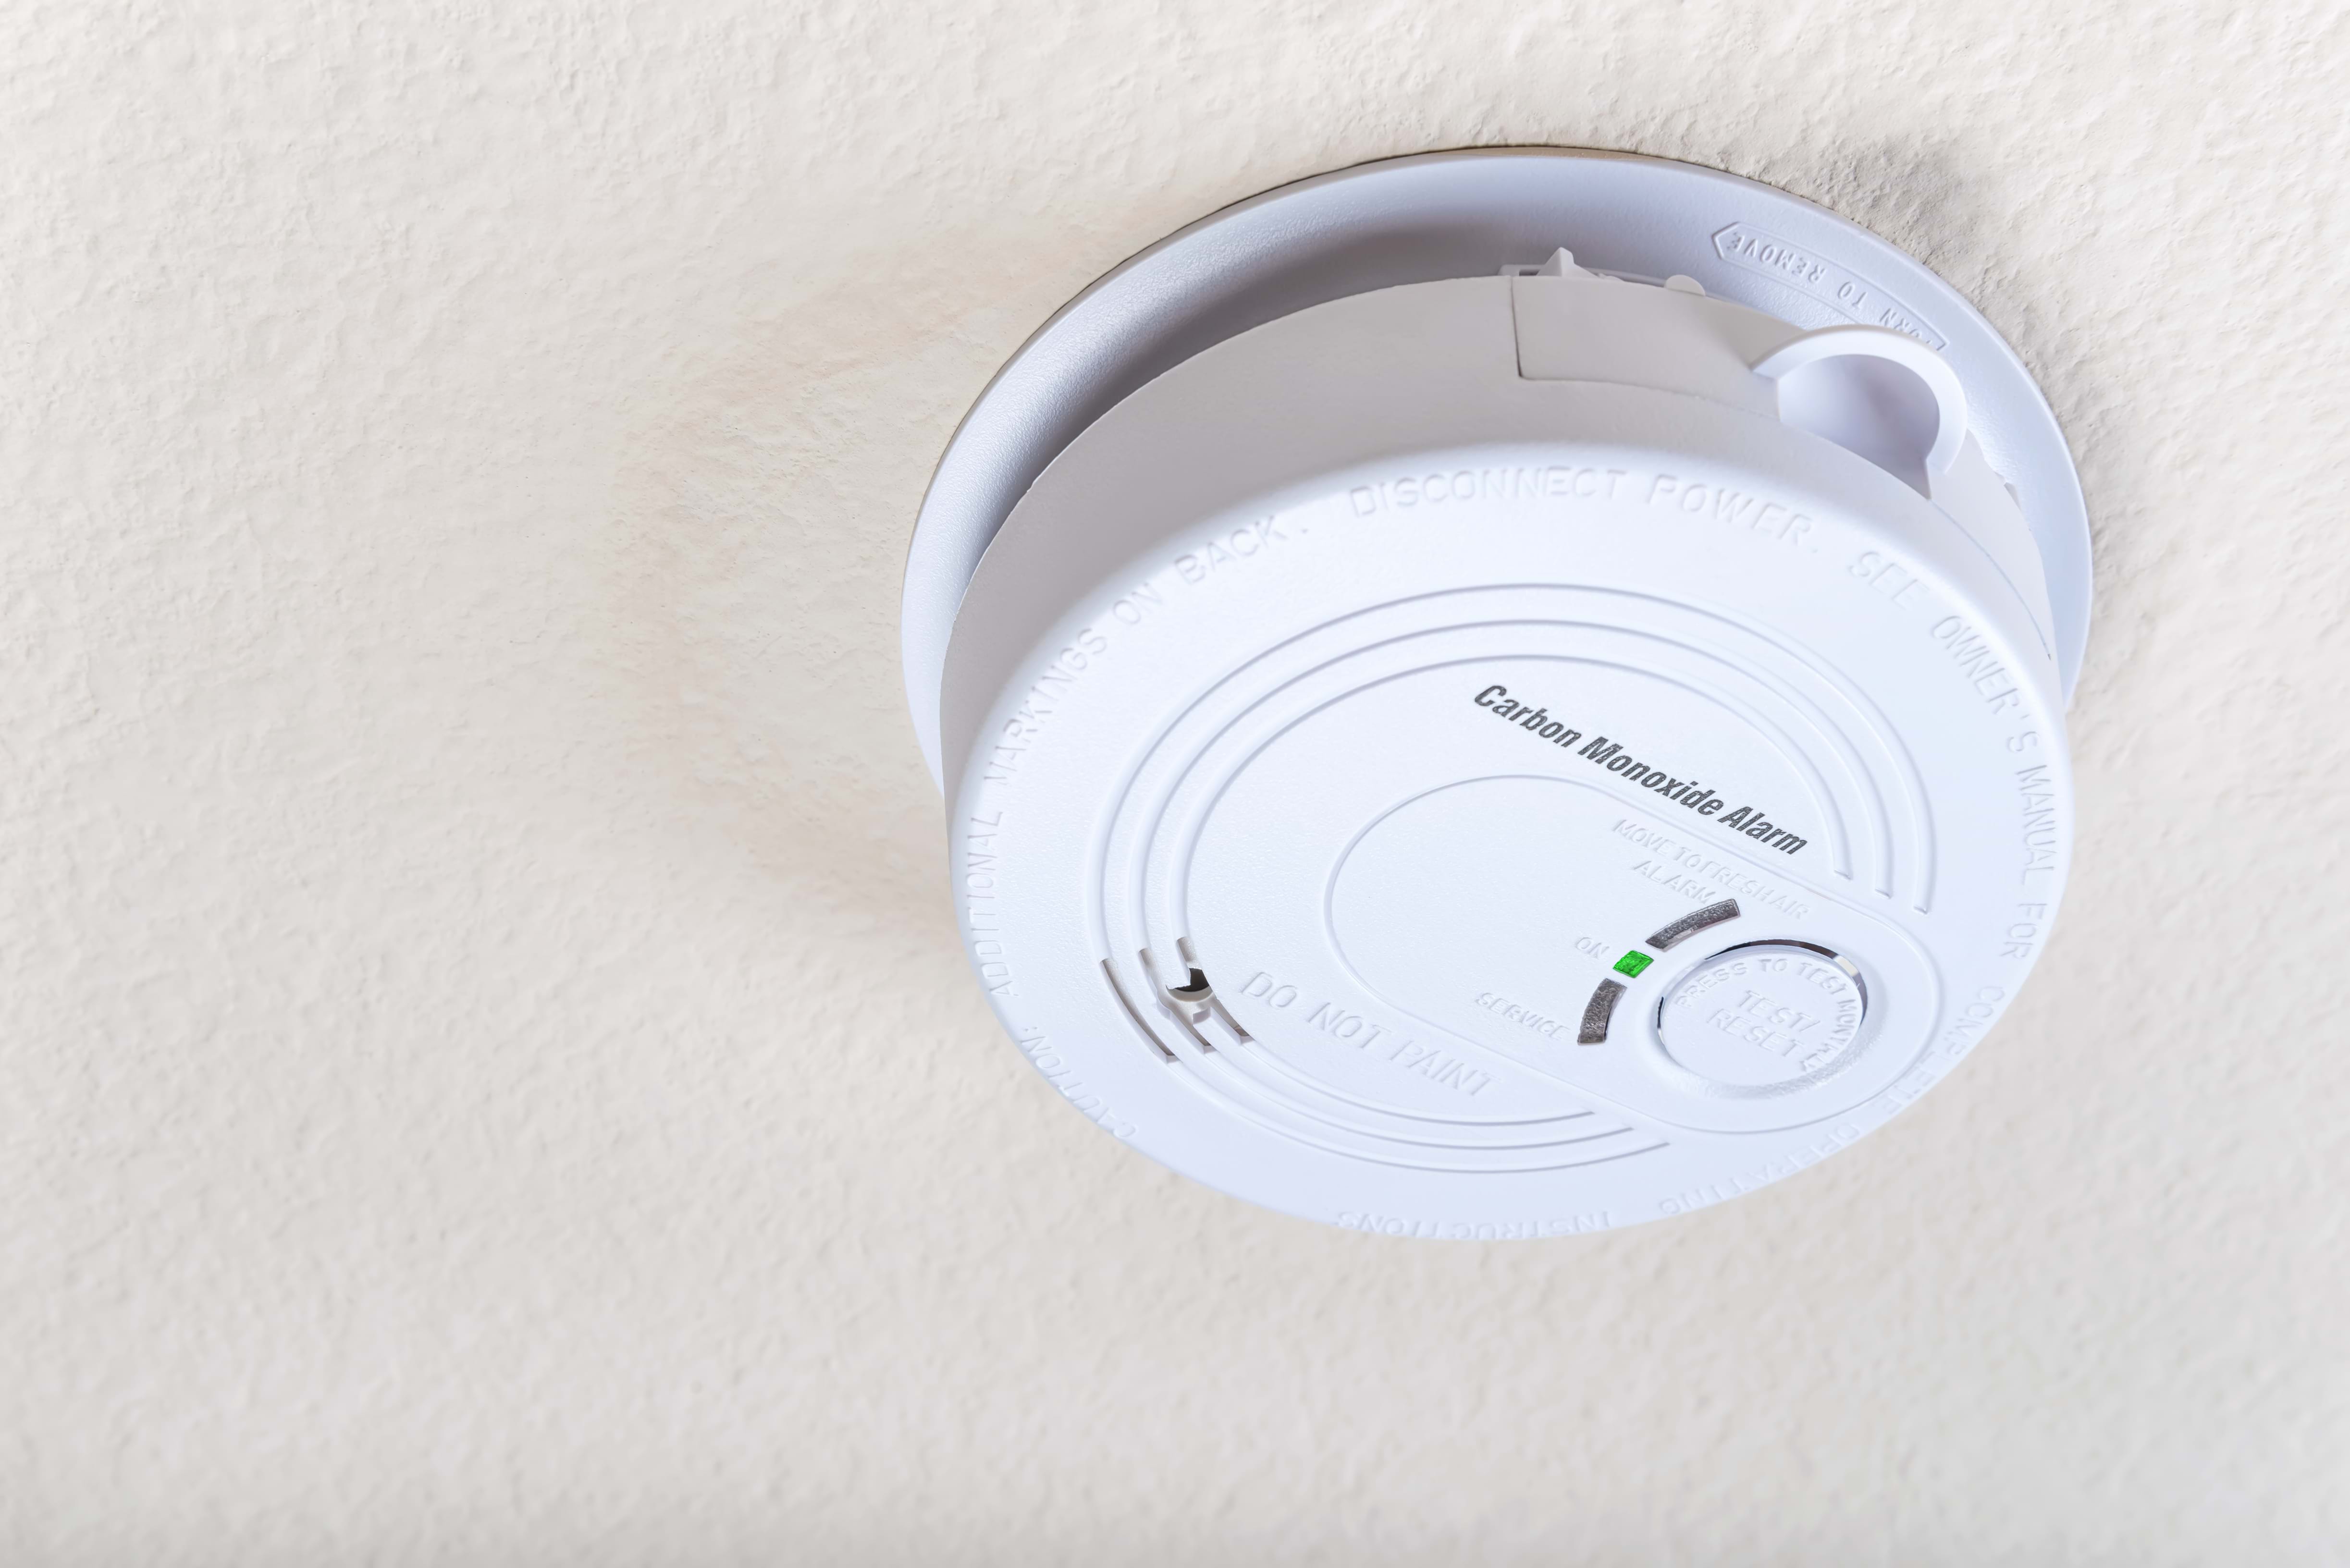 carbon monoxide alarm on ceiling